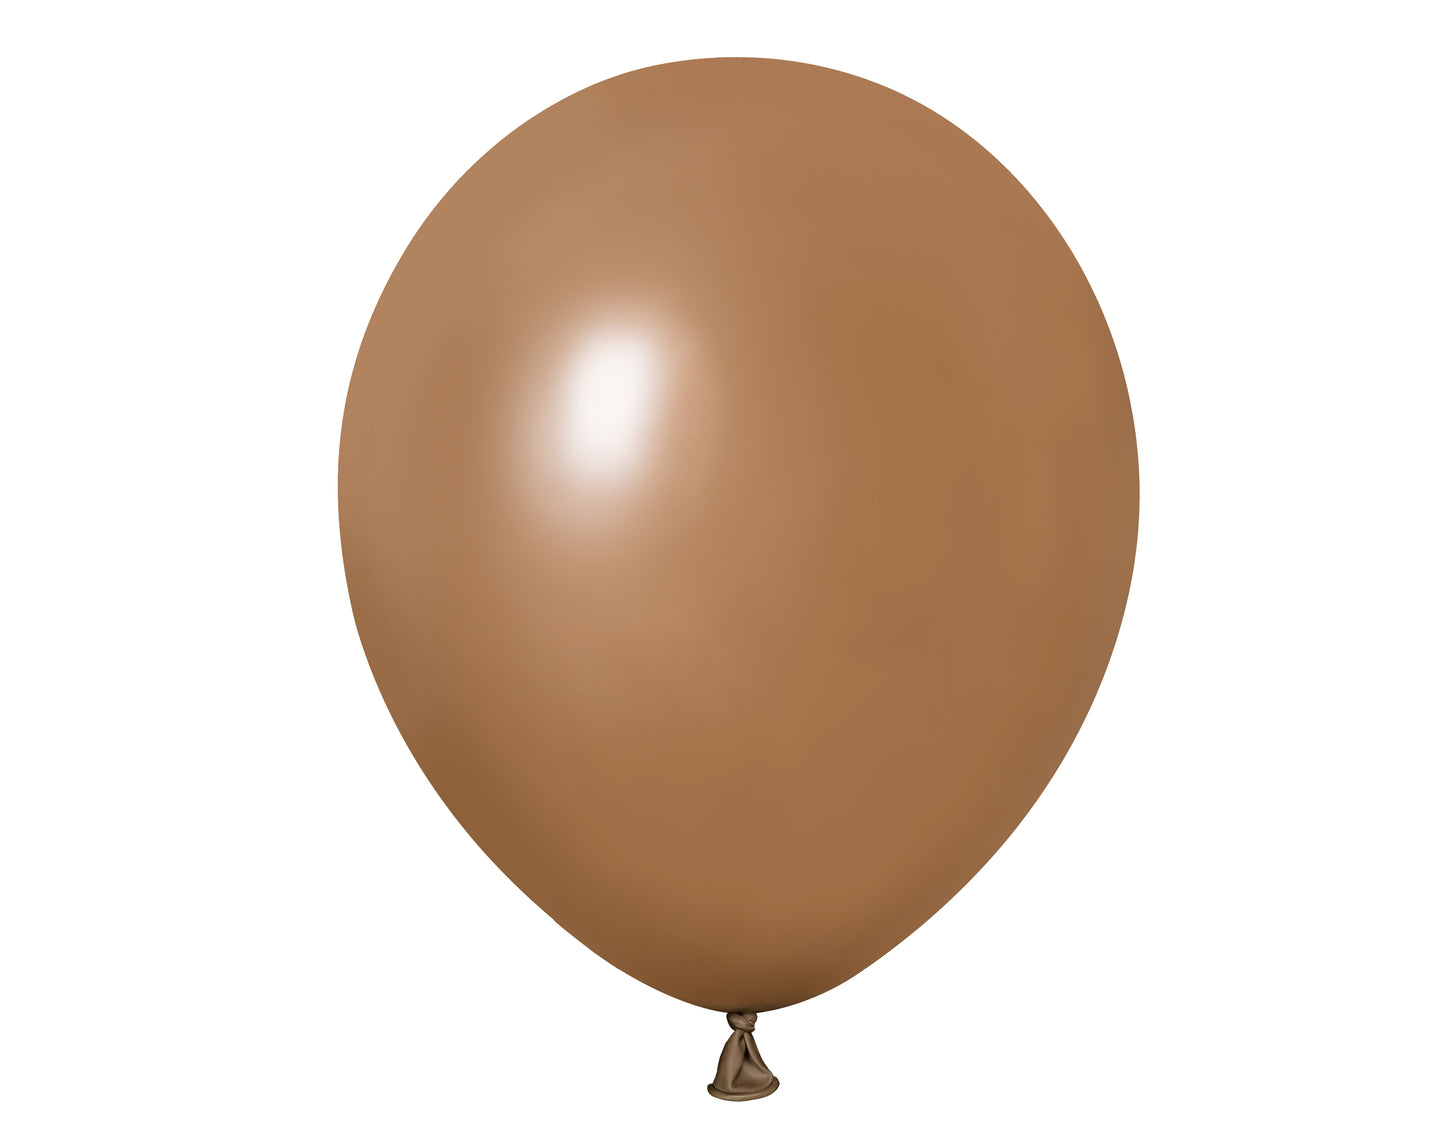 Winntex Premium 18" Brown Latex Balloon 25ct